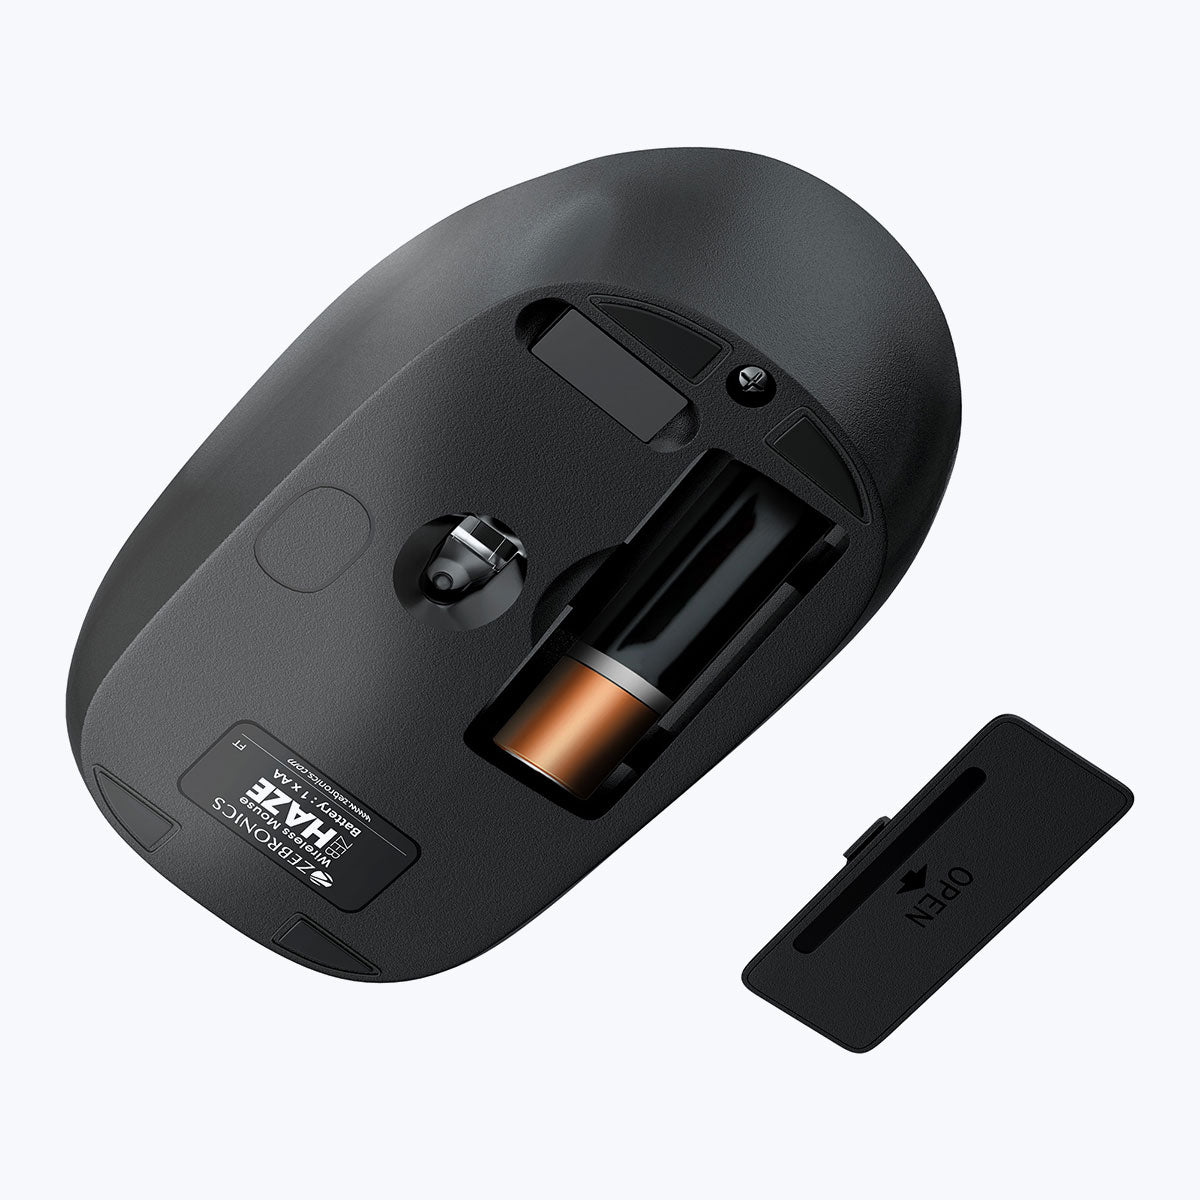 Zeb-Amaze - Wireless Mouse - Zebronics